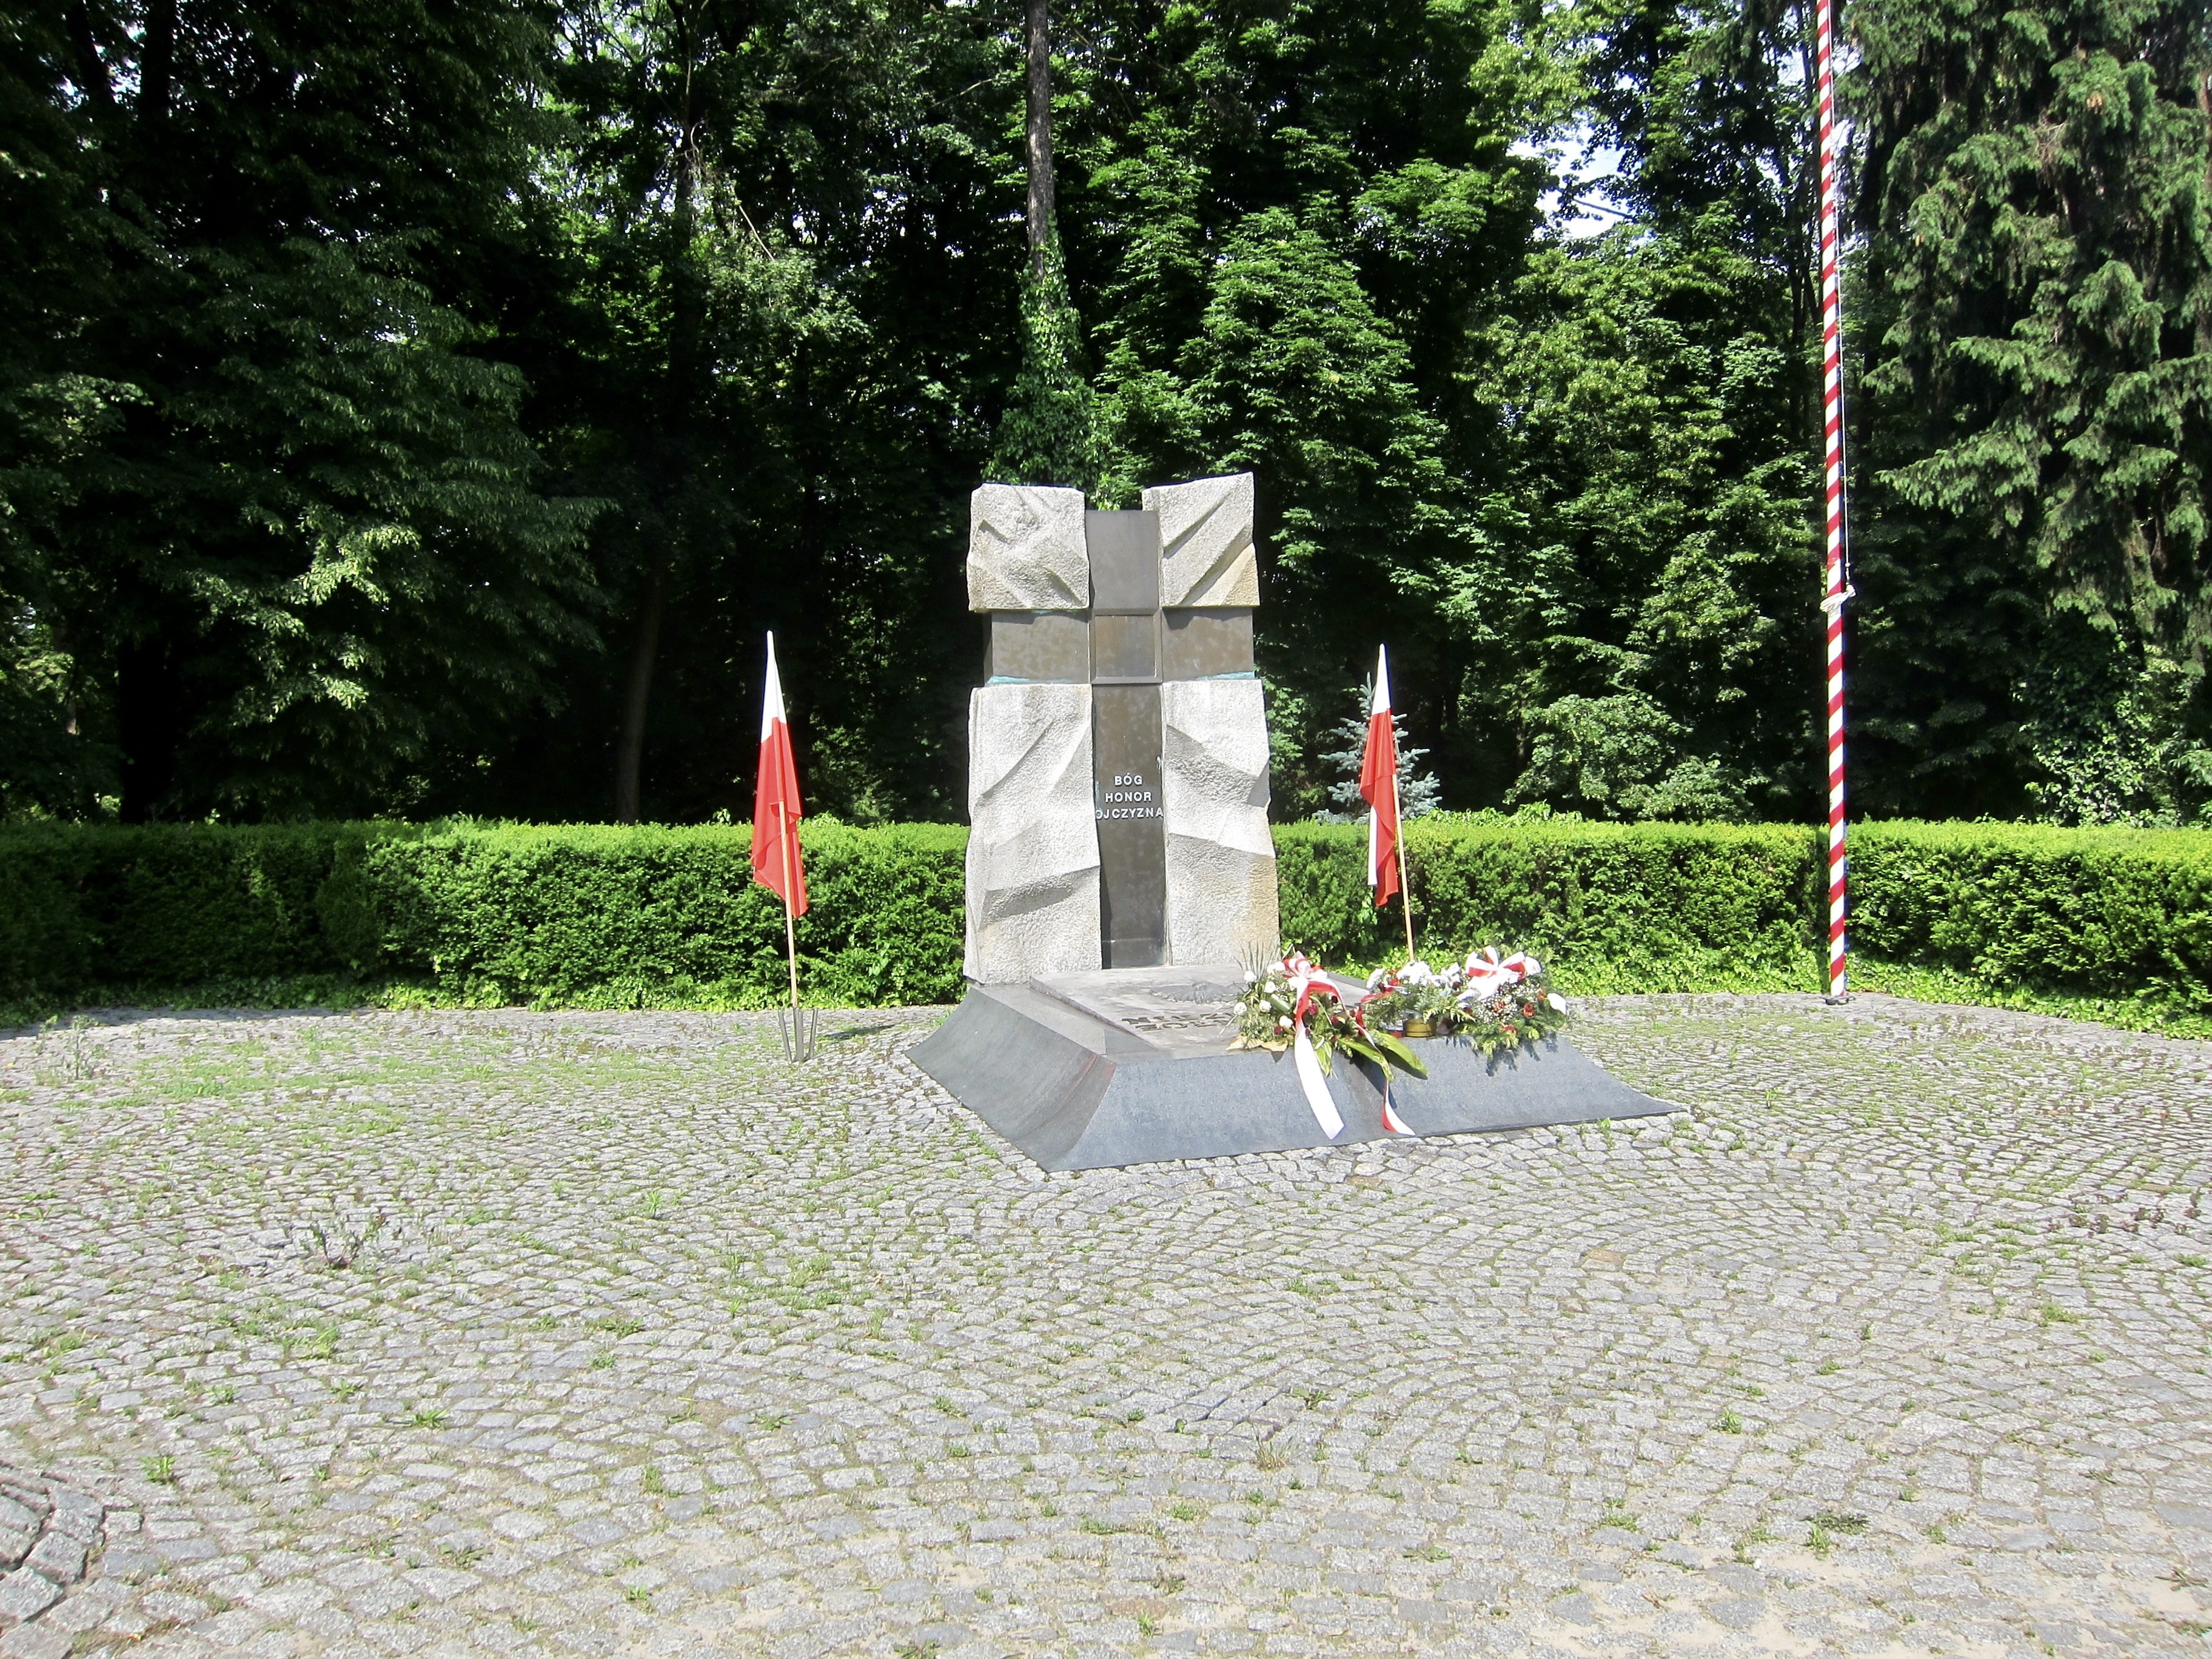 Pomnik Nieznanemu Żołnierzowi / Unknown Soldier Monument - Wide View